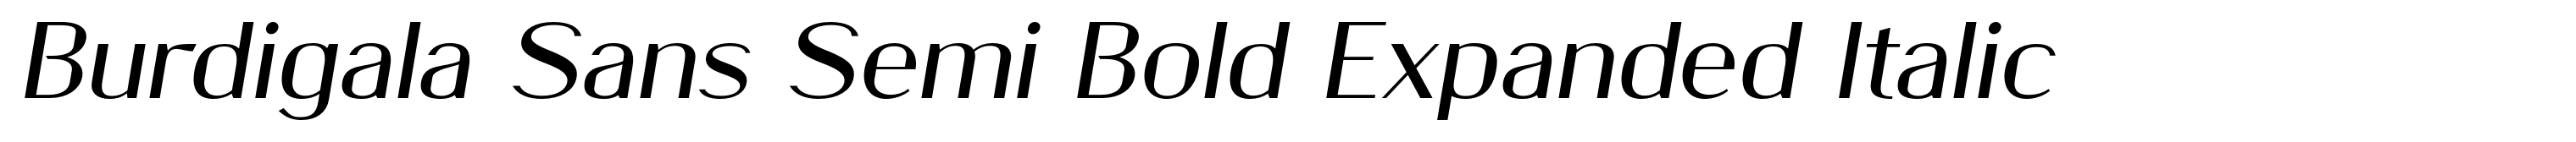 Burdigala Sans Semi Bold Expanded Italic